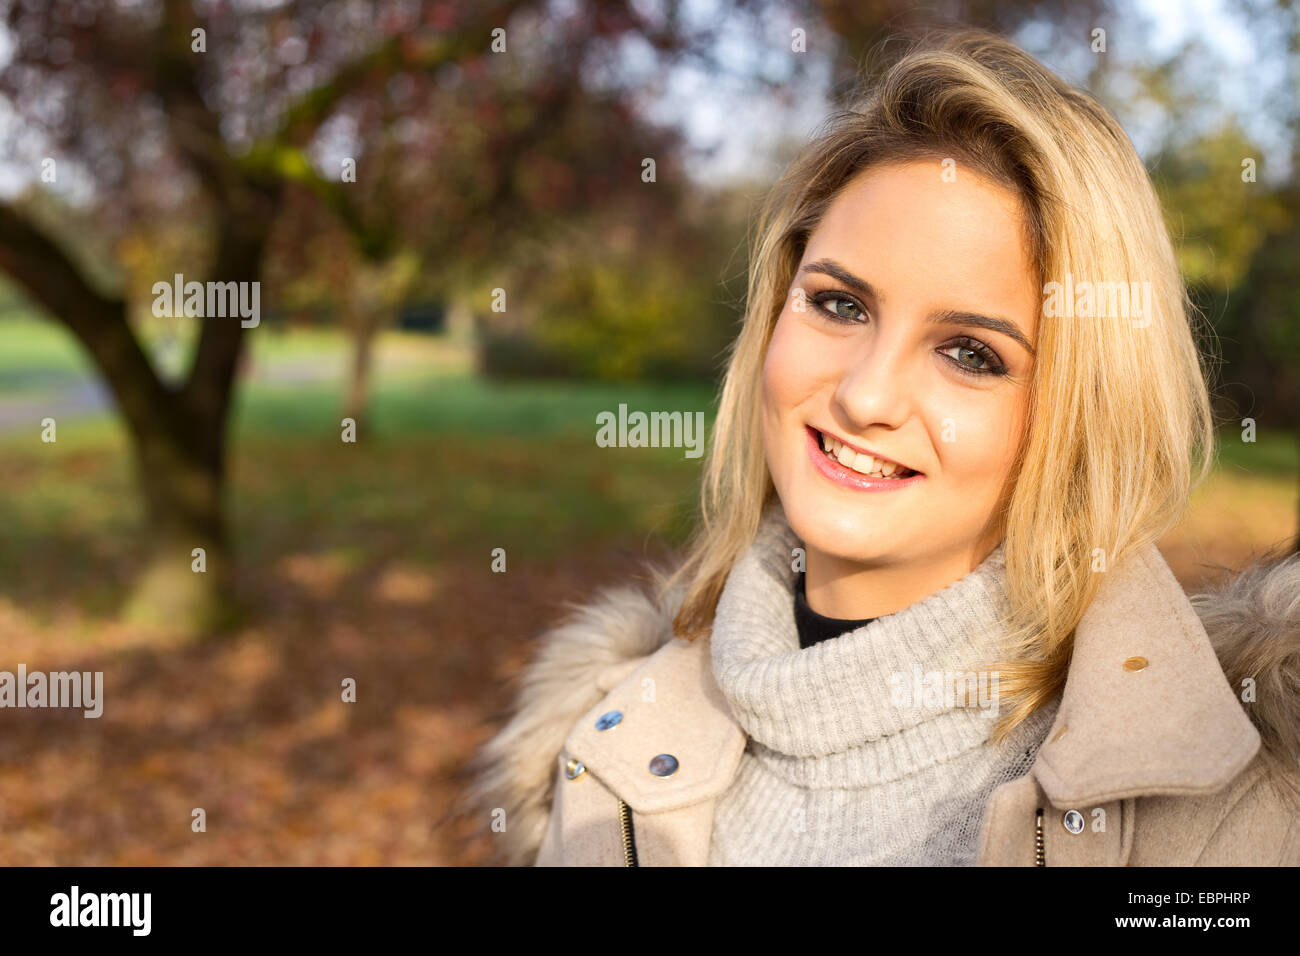 Porträt von einem schönen blonden Mädchen in einem Park. Stockfoto